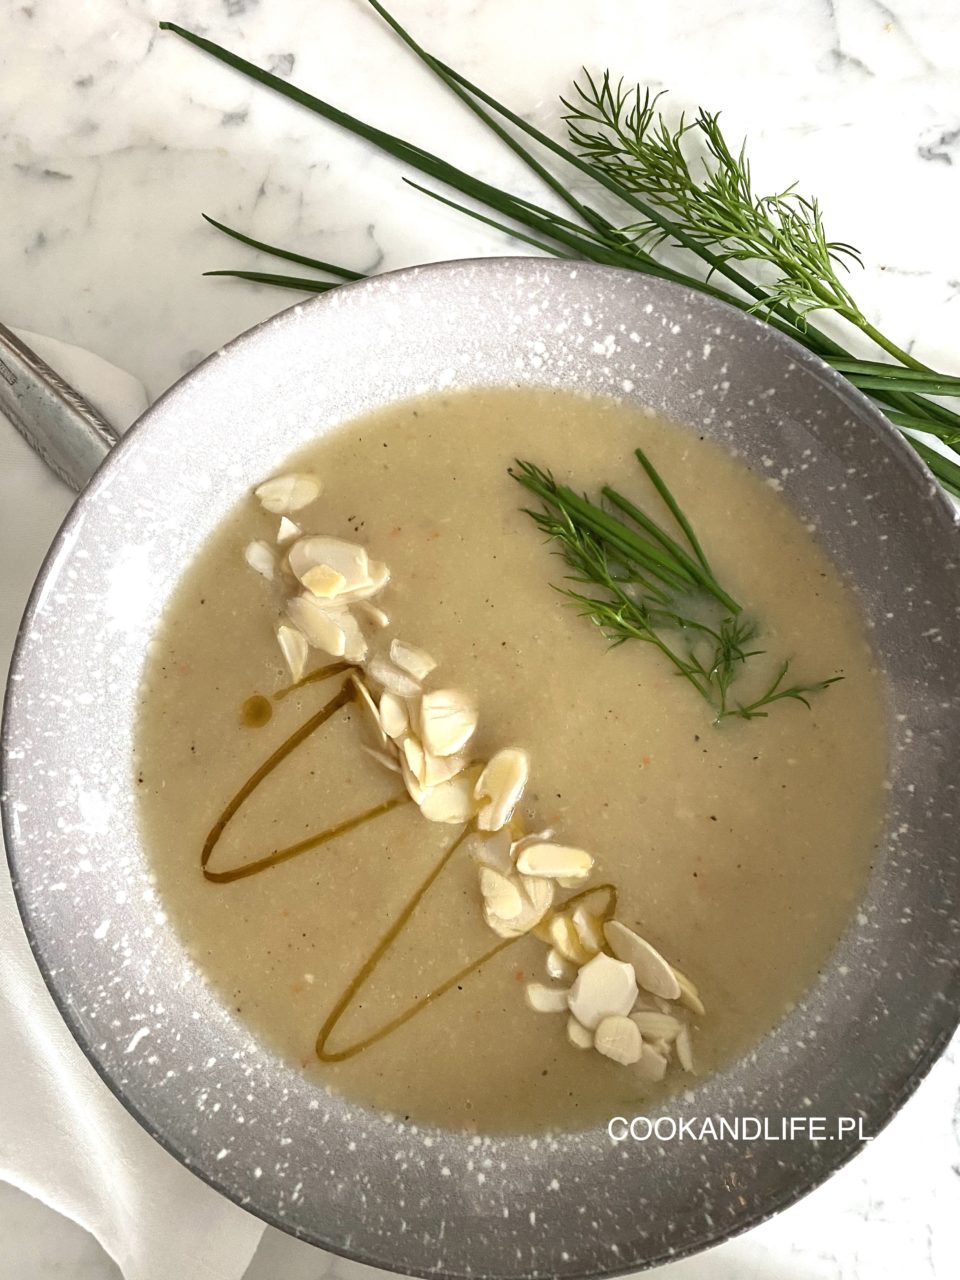 Krem z białych warzyw - zupa w oczekiwaniu na prawdziwą wiosnę 